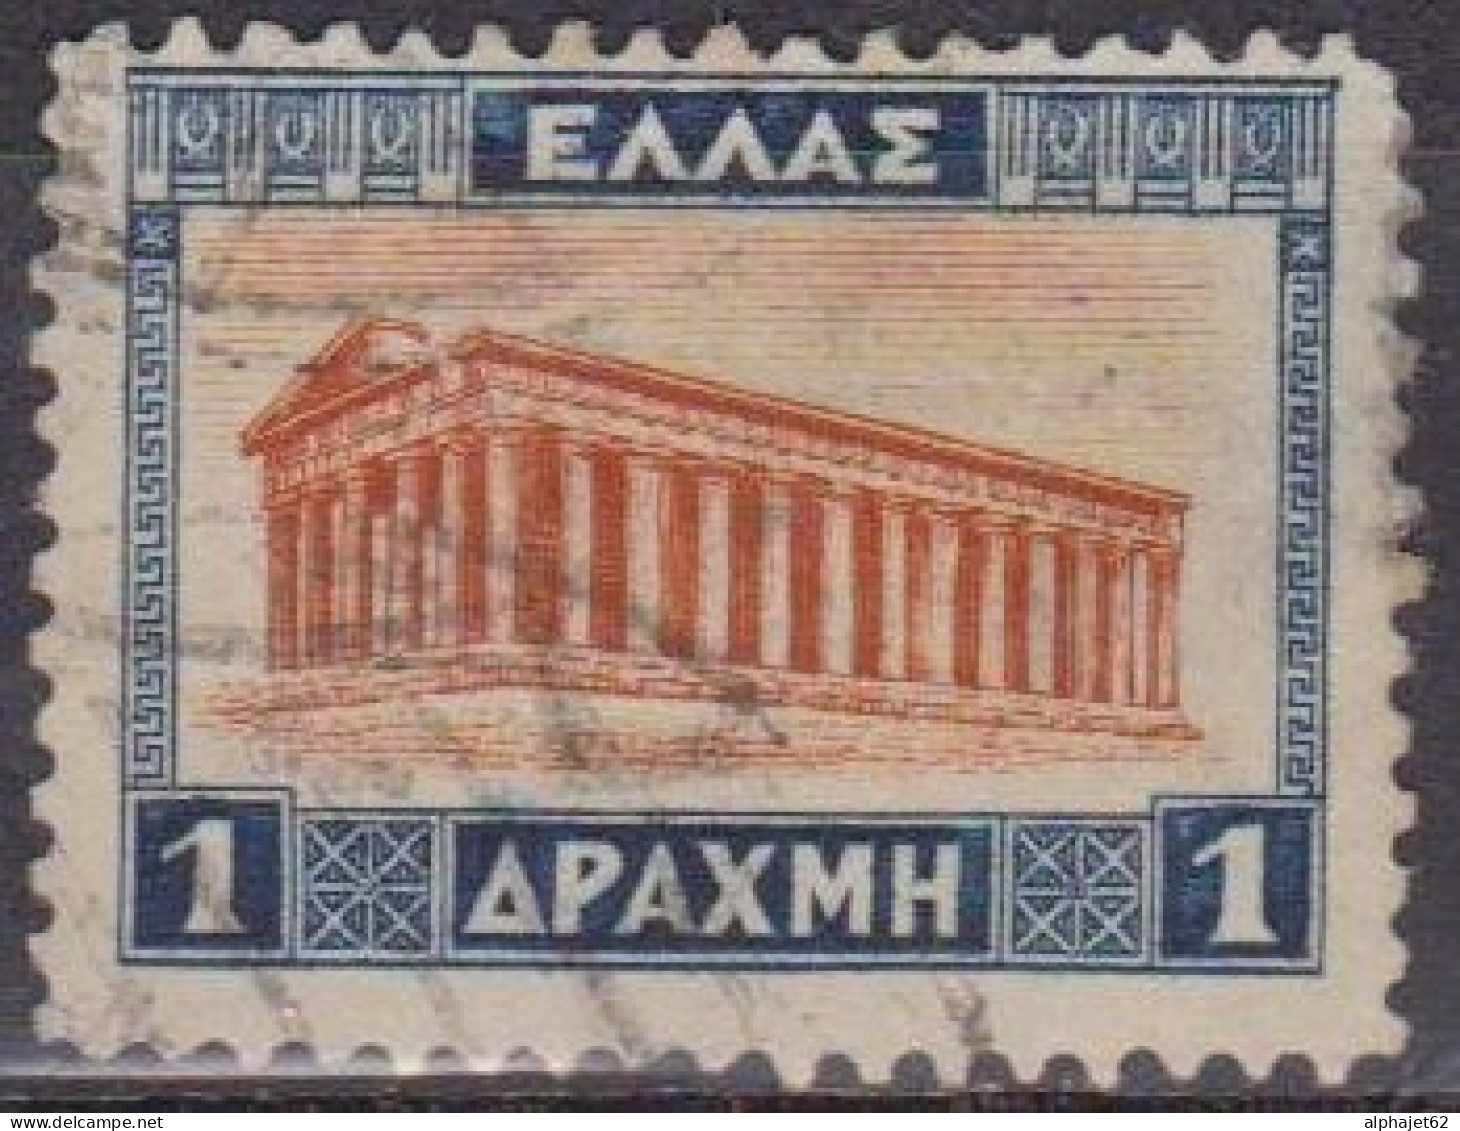 Temple De Thésée à Athènes - GRECE - Archéologie - N°  355 - 1927 - Used Stamps